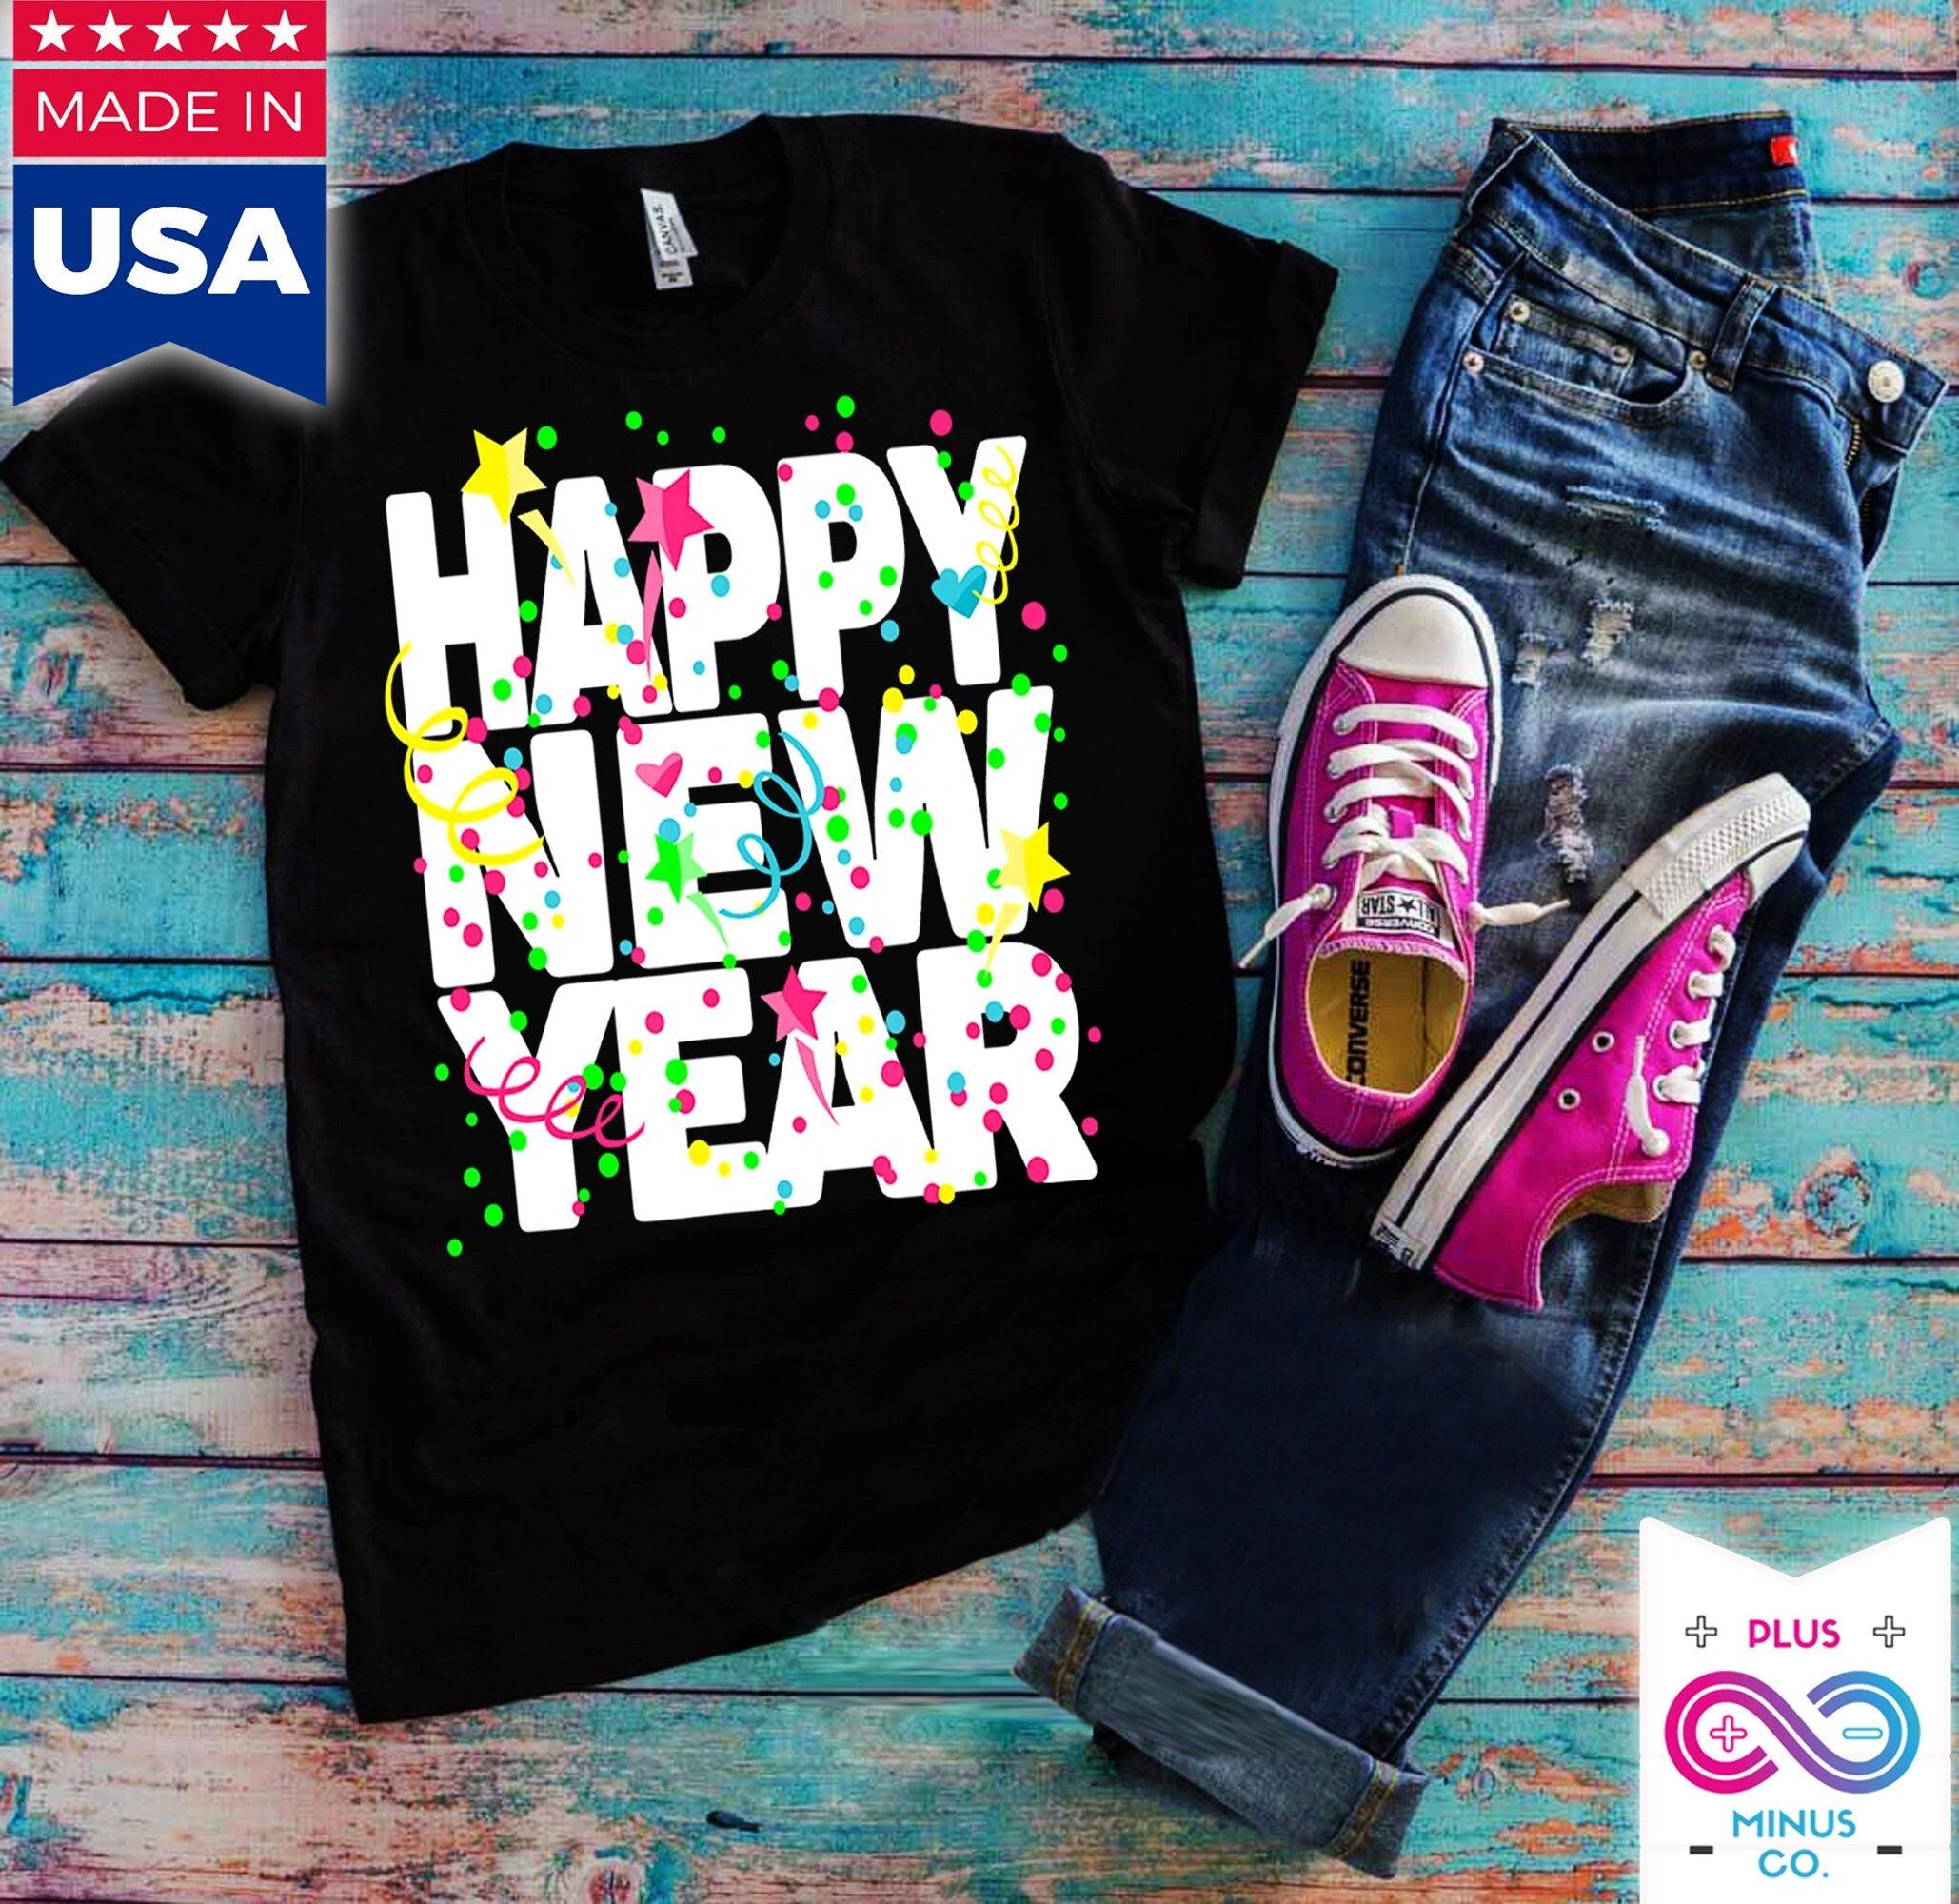 Laimingų Naujųjų Metų, Naujųjų metų vakarėlio marškinėliai, Laimingų Naujųjų 2024 m., 2024 Naujųjų metų marškinėliai, 2024 m. marškinėliai, Naujųjų Metų išvakarių marškinėliai, Pagaliau Naujieji Metai – plusminusco.com